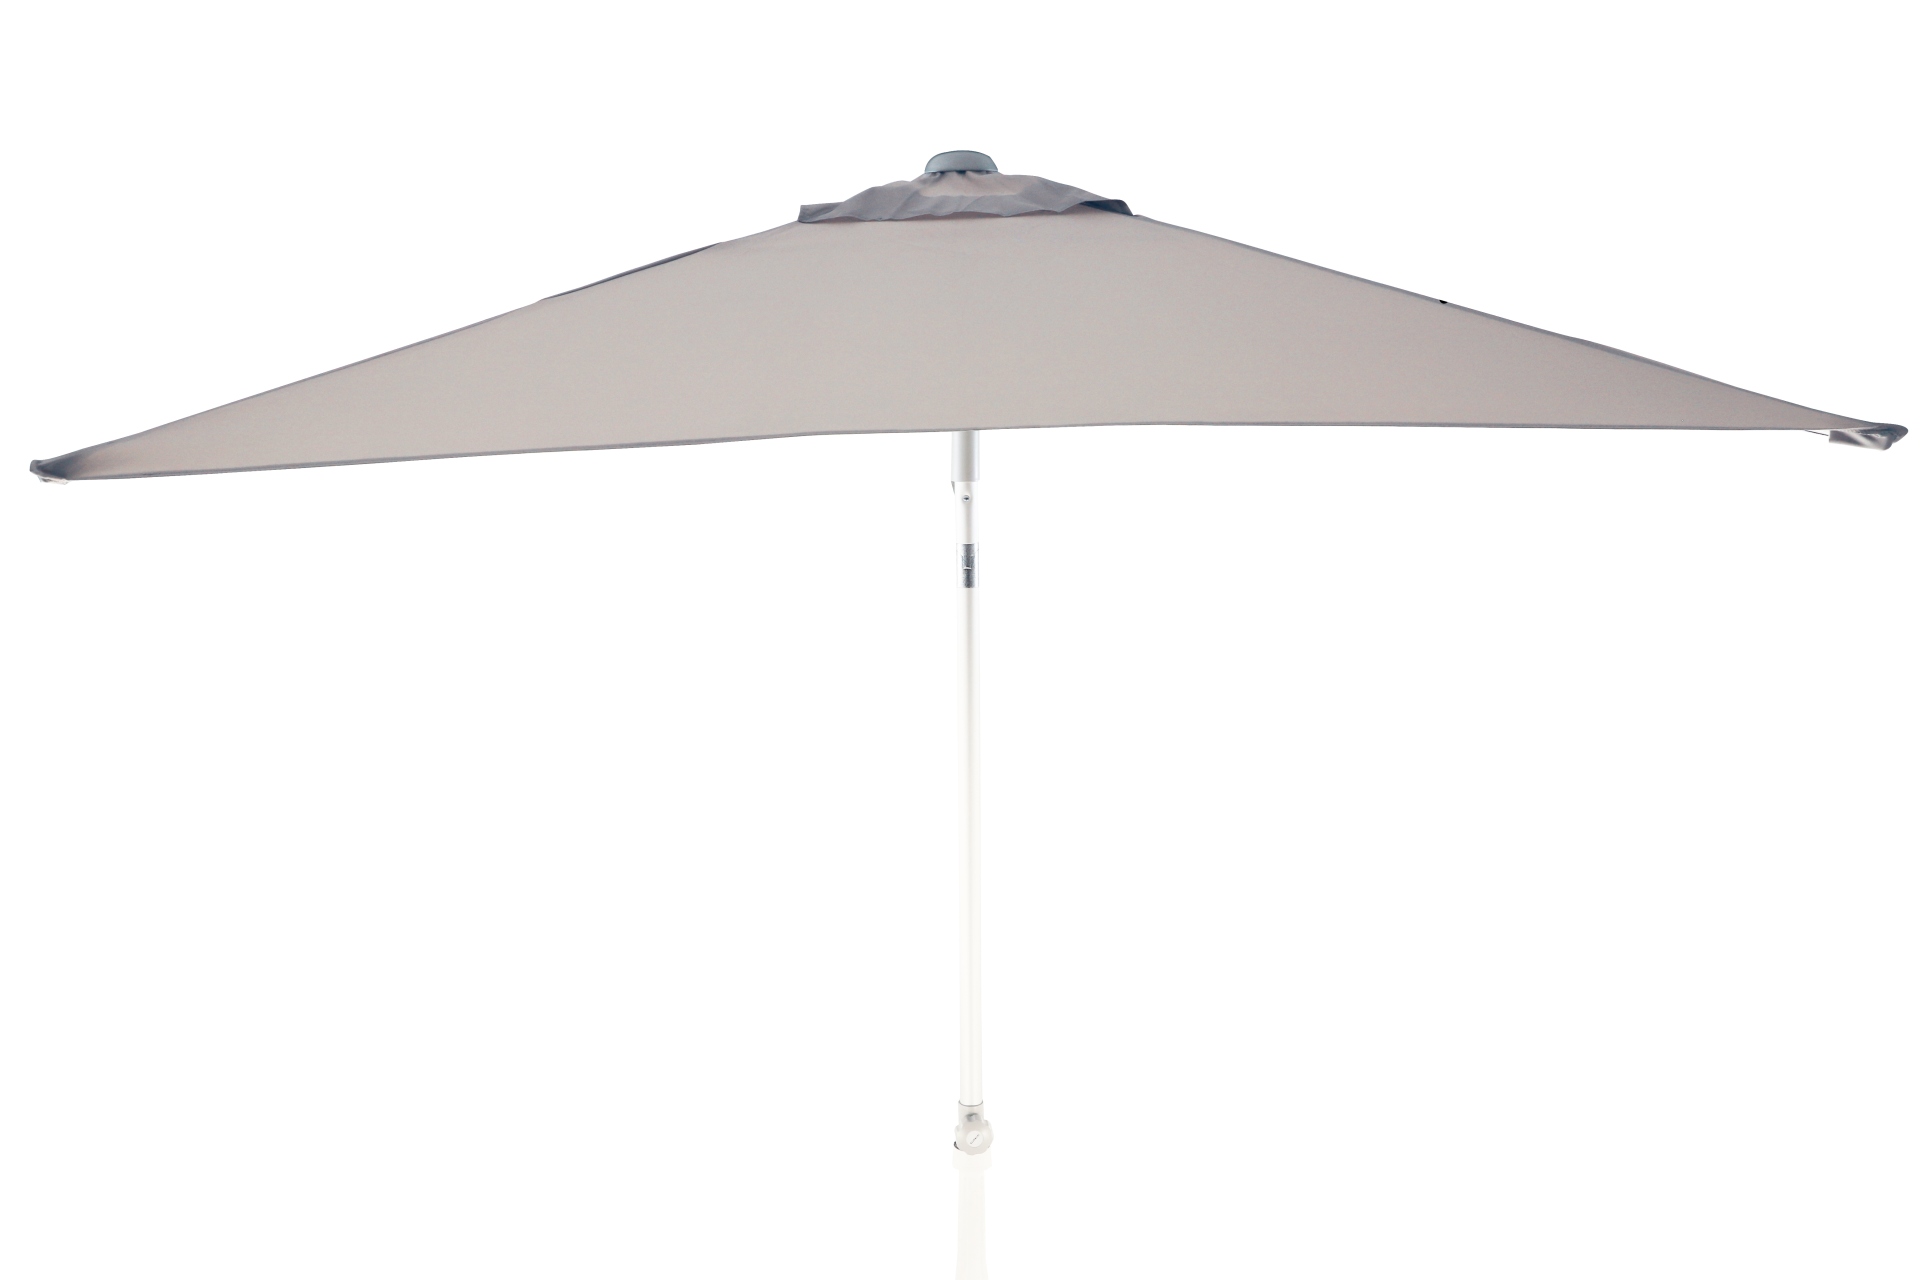 Der Sonnenschirm Elba überzeugt mit seinem modernen Design. Die Form des Schirms ist Eckig und hat eine Größe von 150 cm. Designet wurde er von der Marke Jan Kurtz und hat die Farbe Hellgrau.